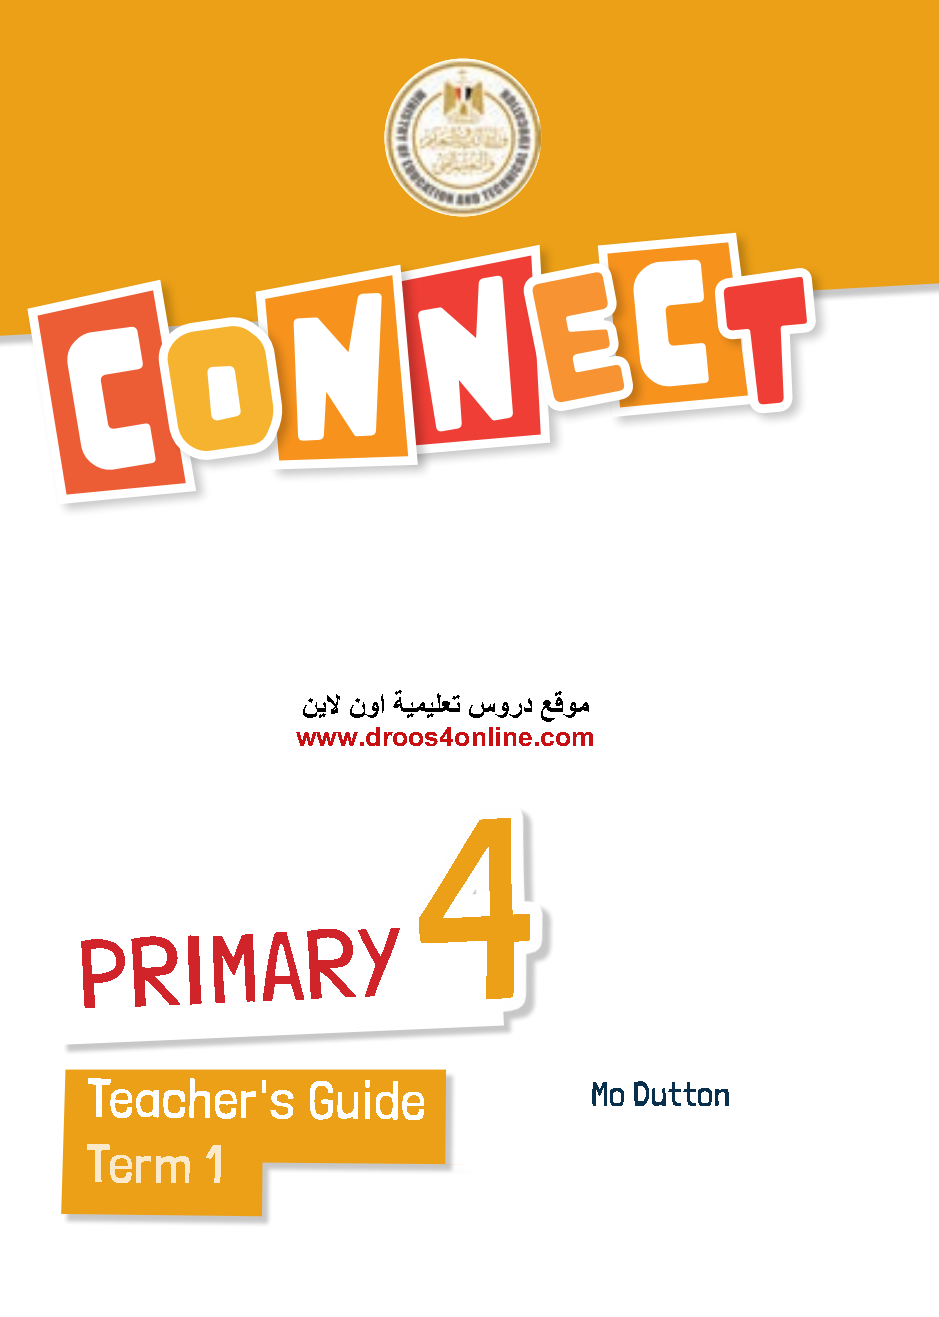 دليل المعلم كاملاً Teacher's Guide connect 4 الترم الأول 2023 موقع دروس تعليمية اون لاين